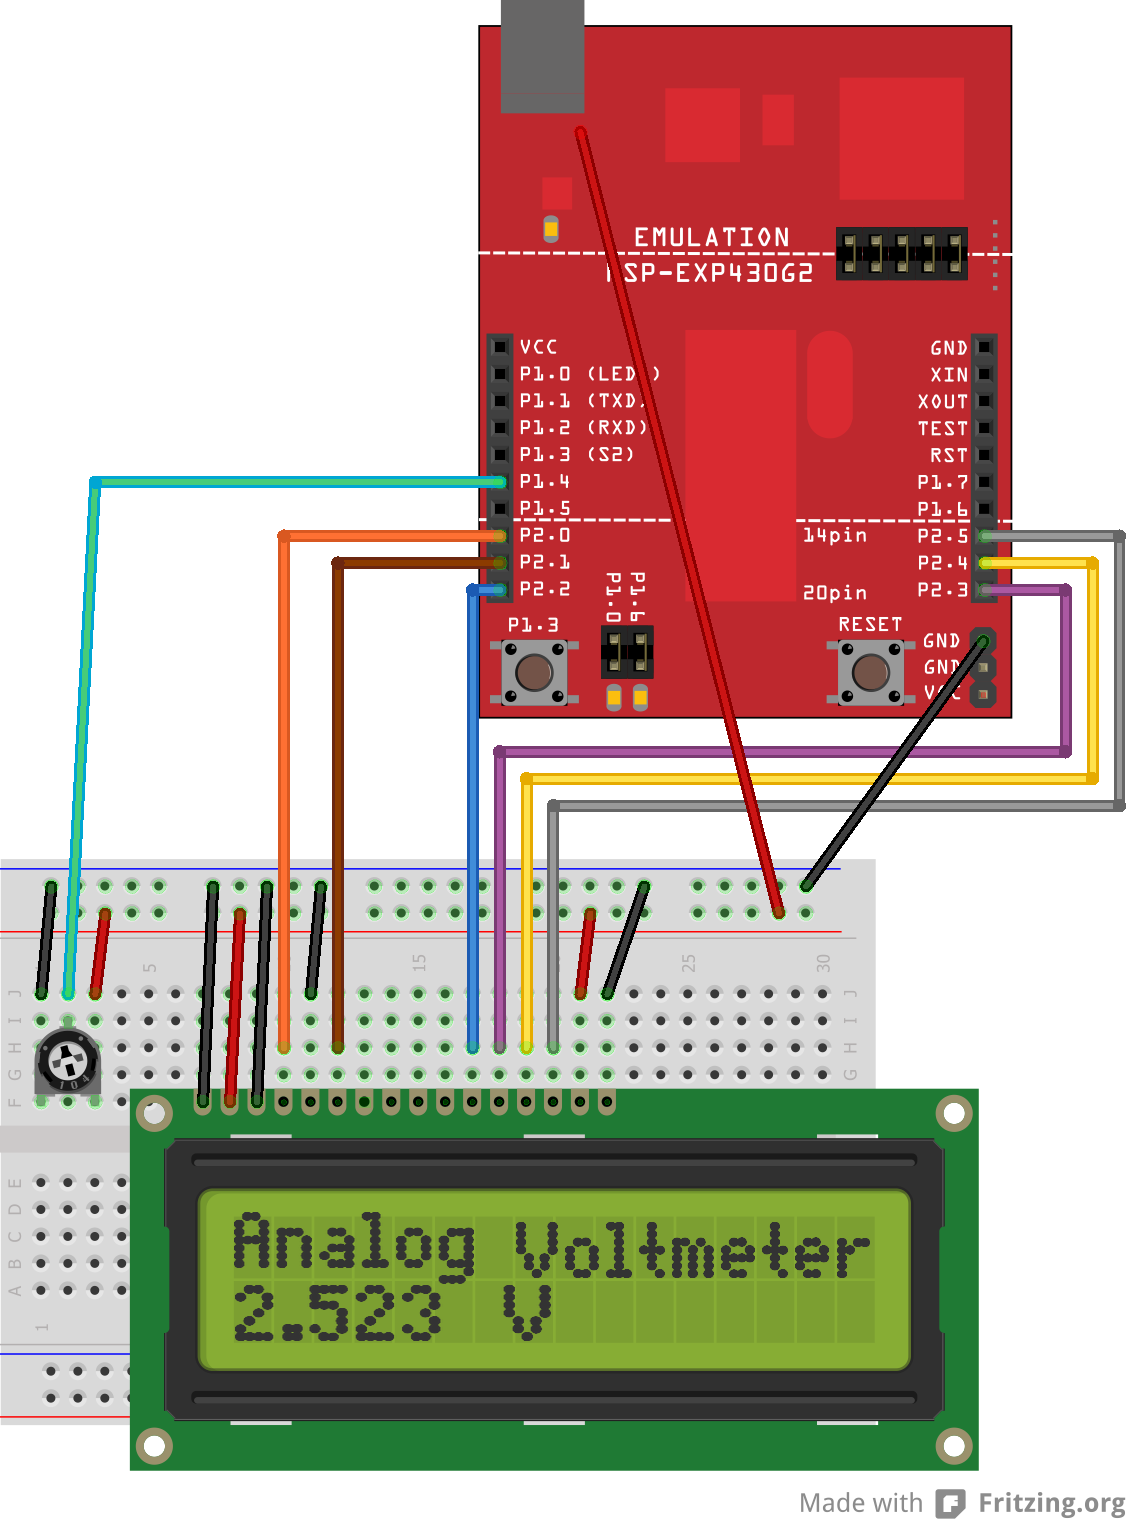 Egyszerű feszültségmérő Megmérhetjük a valamelyik analóg bemenetre kapcsolt feszültség értékét és kijelezhetjük az LCD modul segítségével.